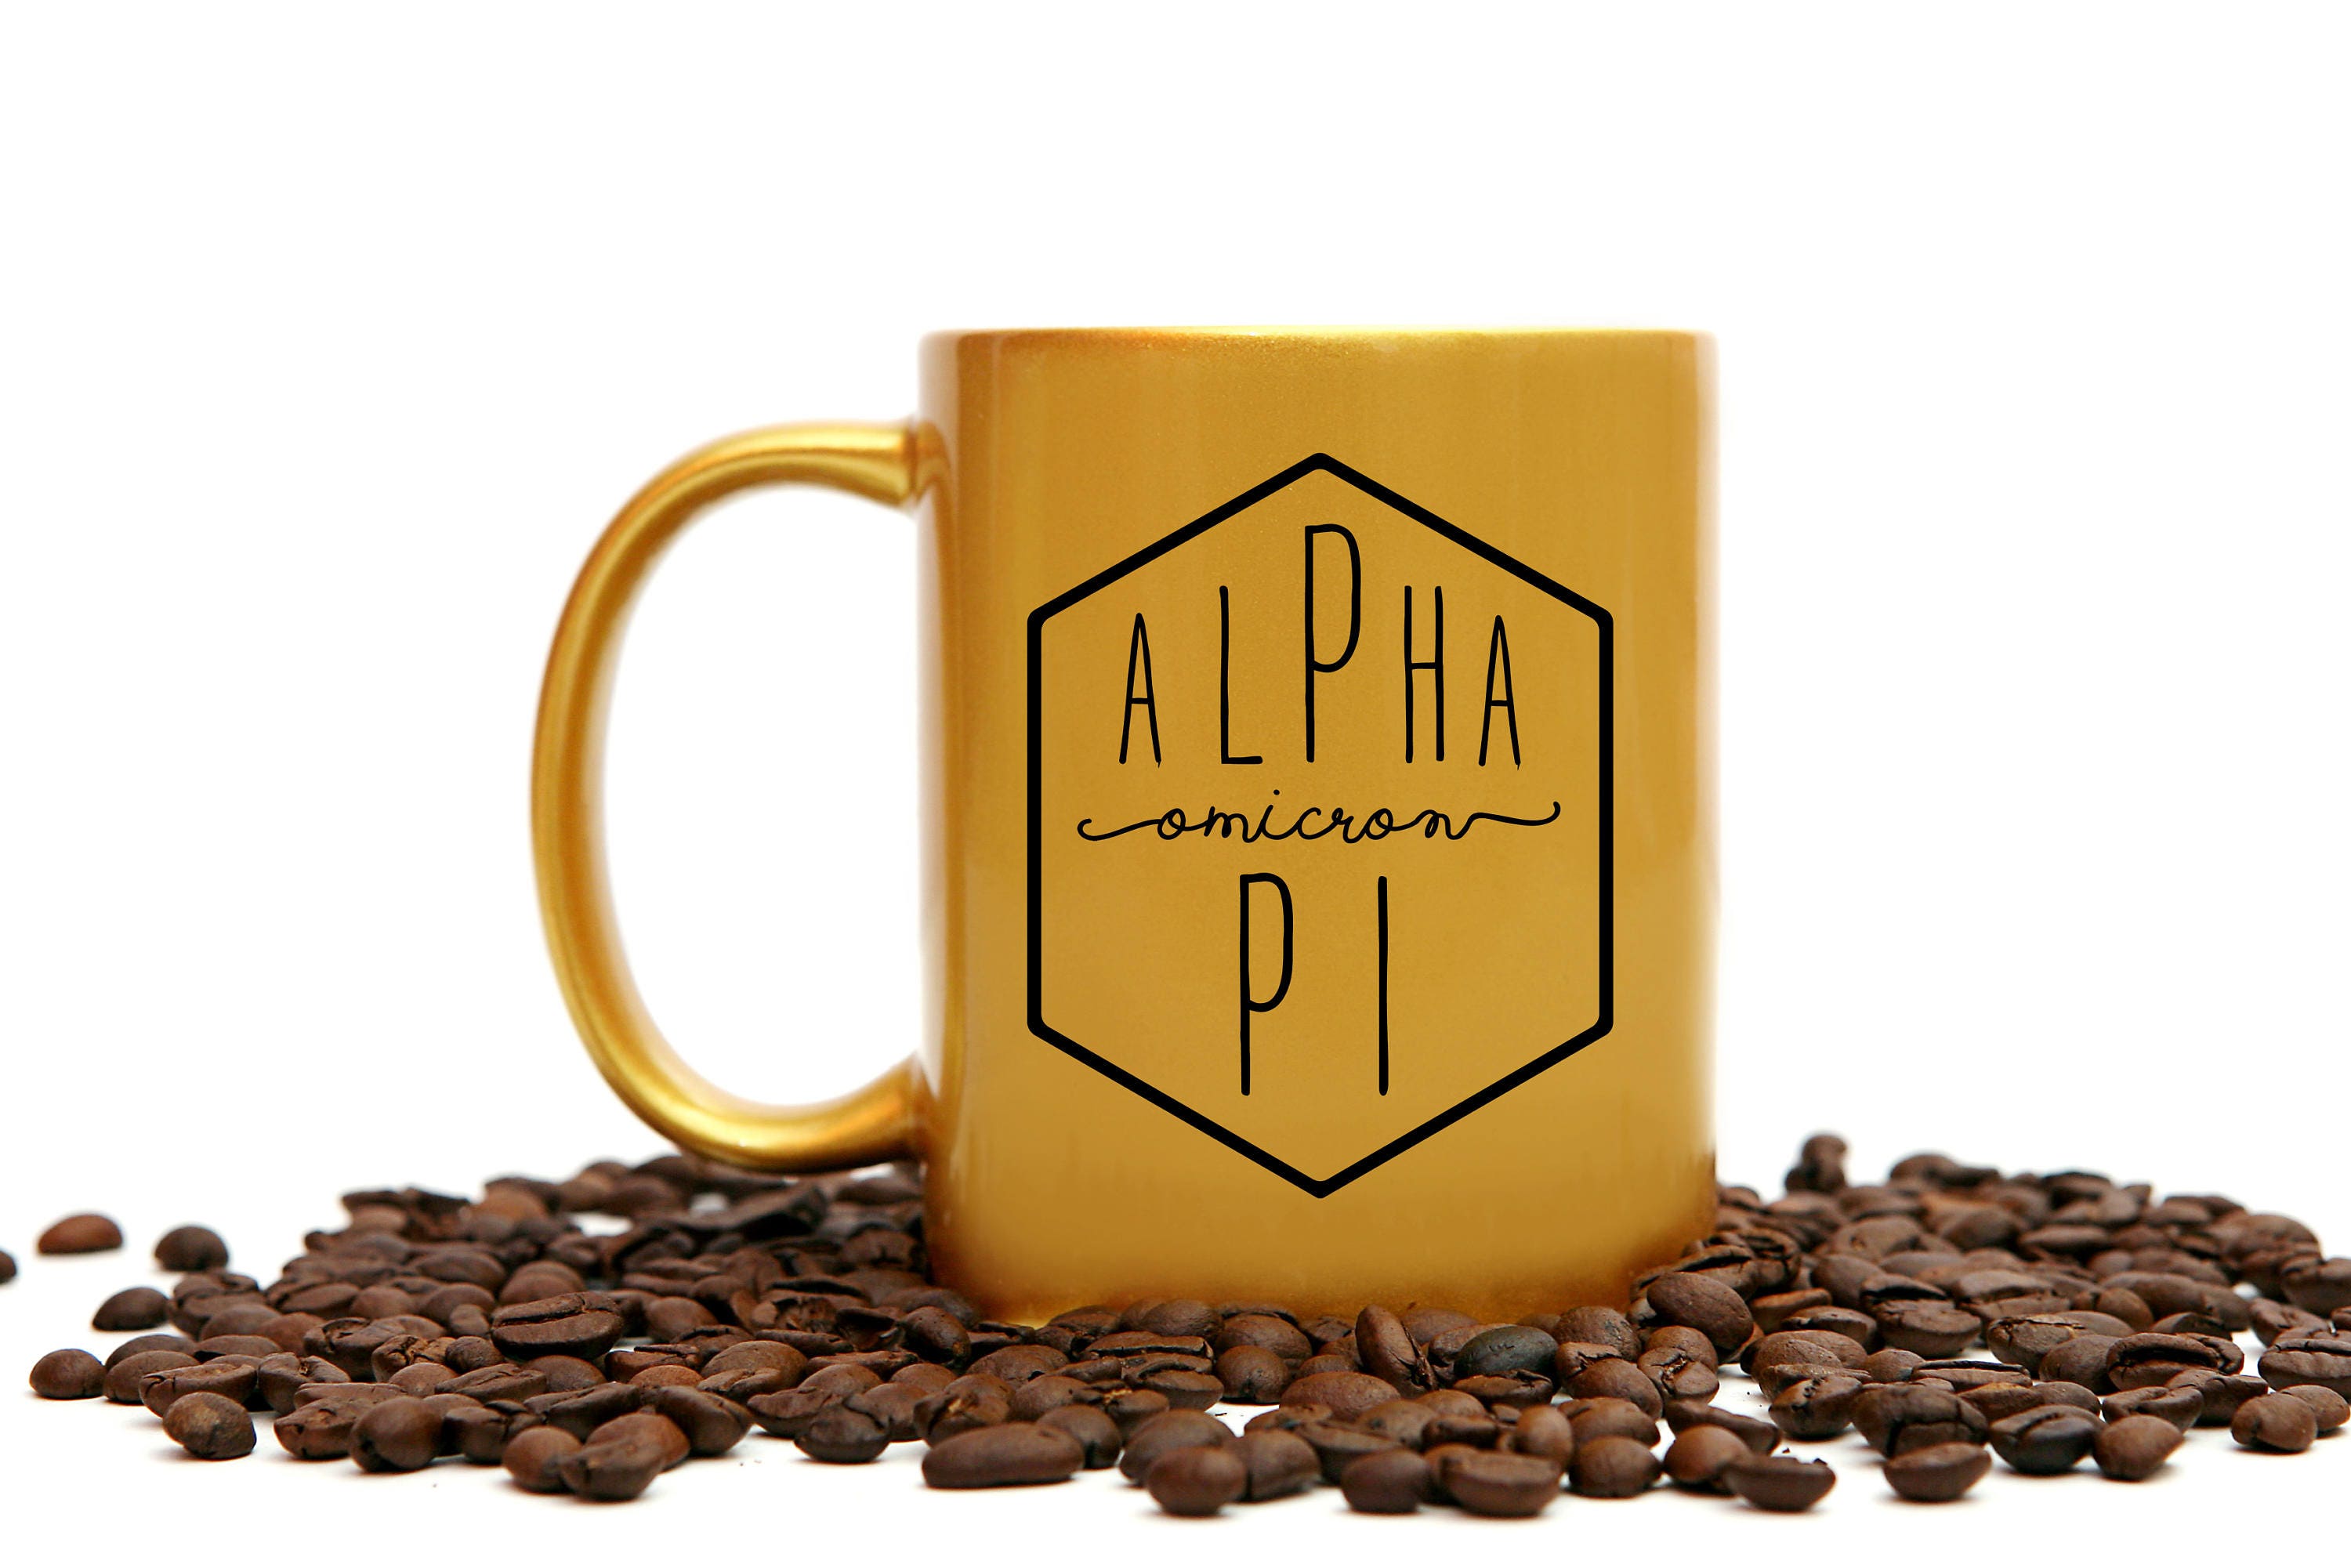 Alpha Omicron Pi Gold Coffee Mug - Go Greek Chic